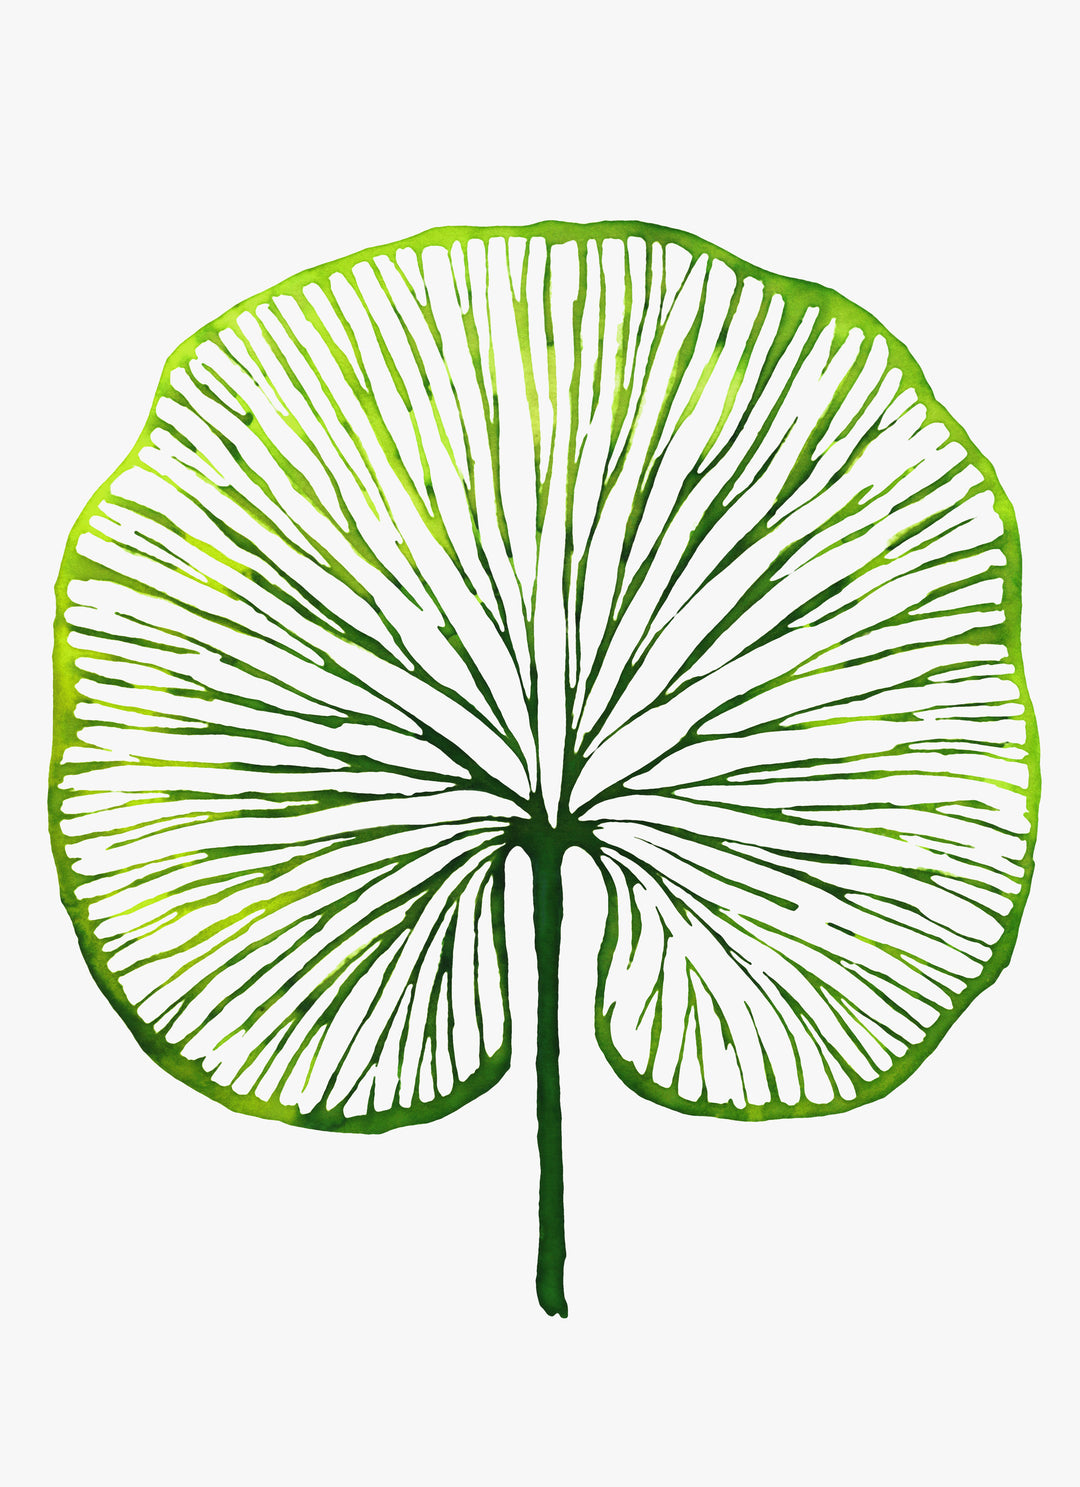 Botanischer Kunstdruck 'Veins' - Pflanzendrucke, botanische Kunstdrucke und botanische Illustrationen